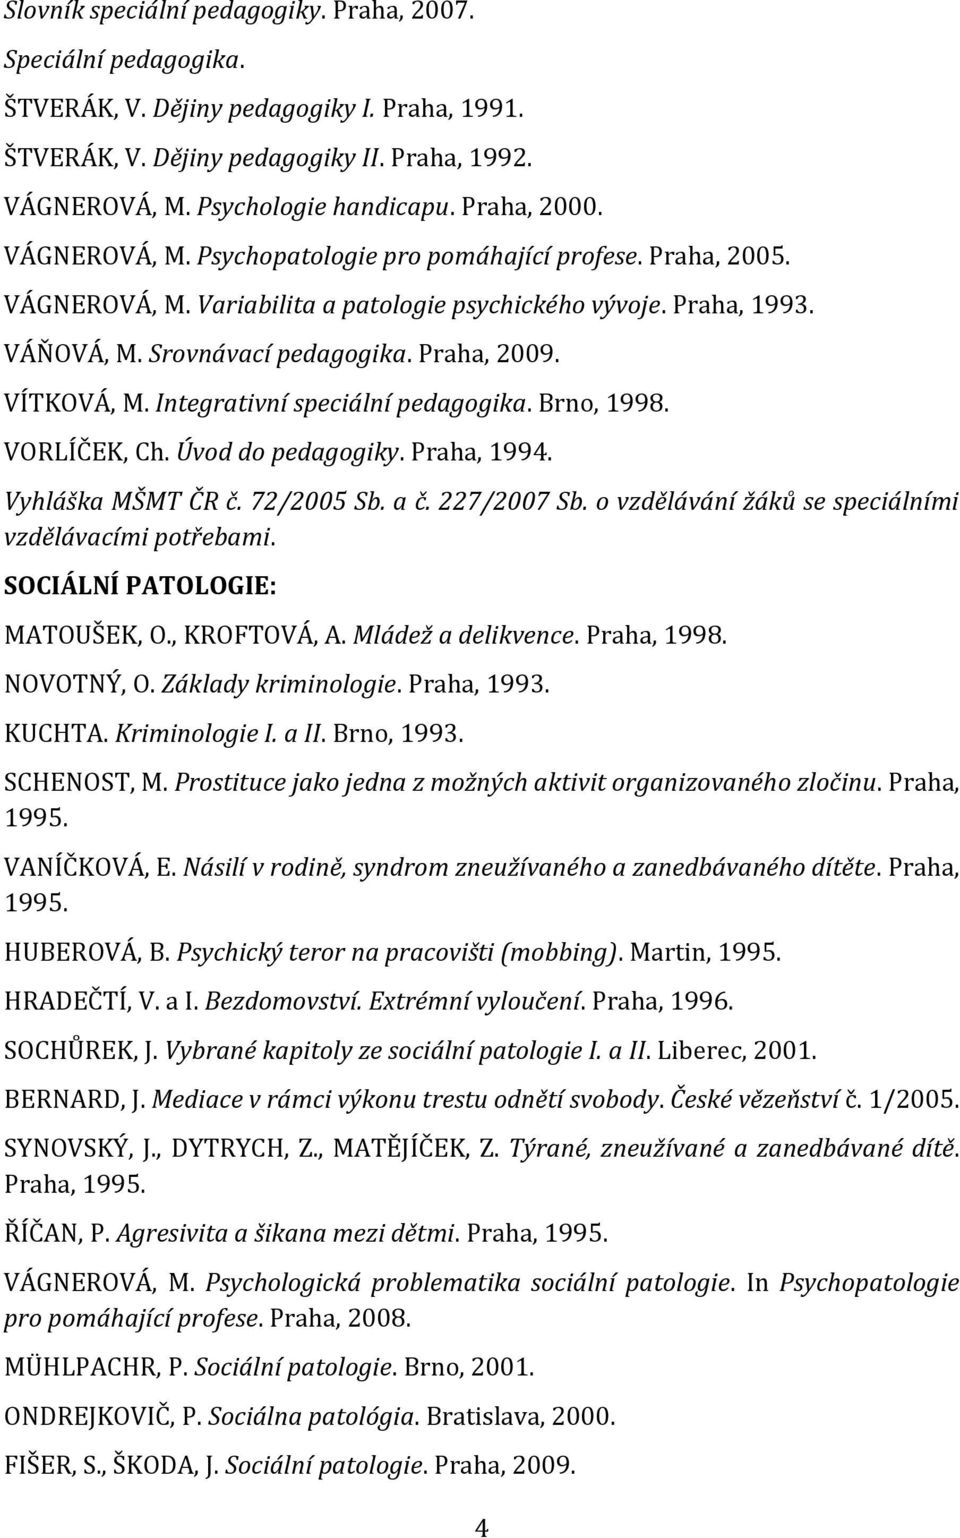 VÍTKOVÁ, M. Integrativní speciální pedagogika. Brno, 1998. VORLÍČEK, Ch. Úvod do pedagogiky. Praha, 1994. Vyhláška MŠMT ČR č. 72/2005 Sb. a č. 227/2007 Sb.